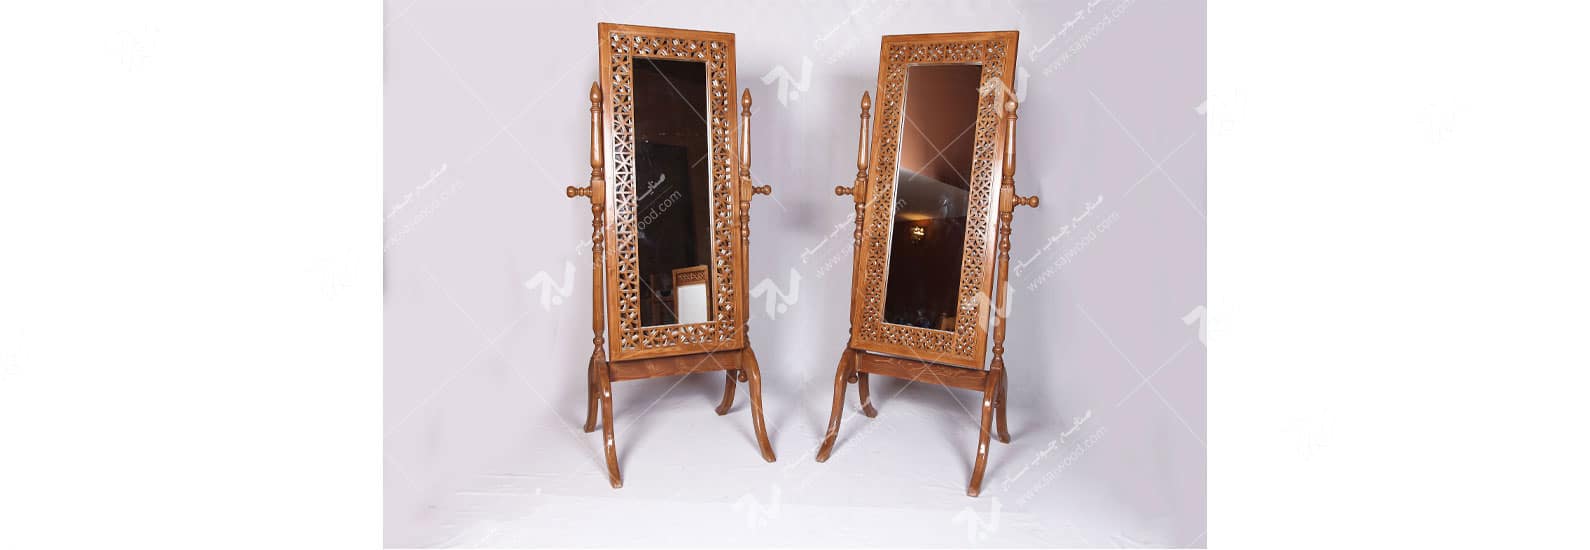 آیینه ایستاده( قدی )چوبی سنتی مشبک گره چینی -آذین کد ۶۰۰